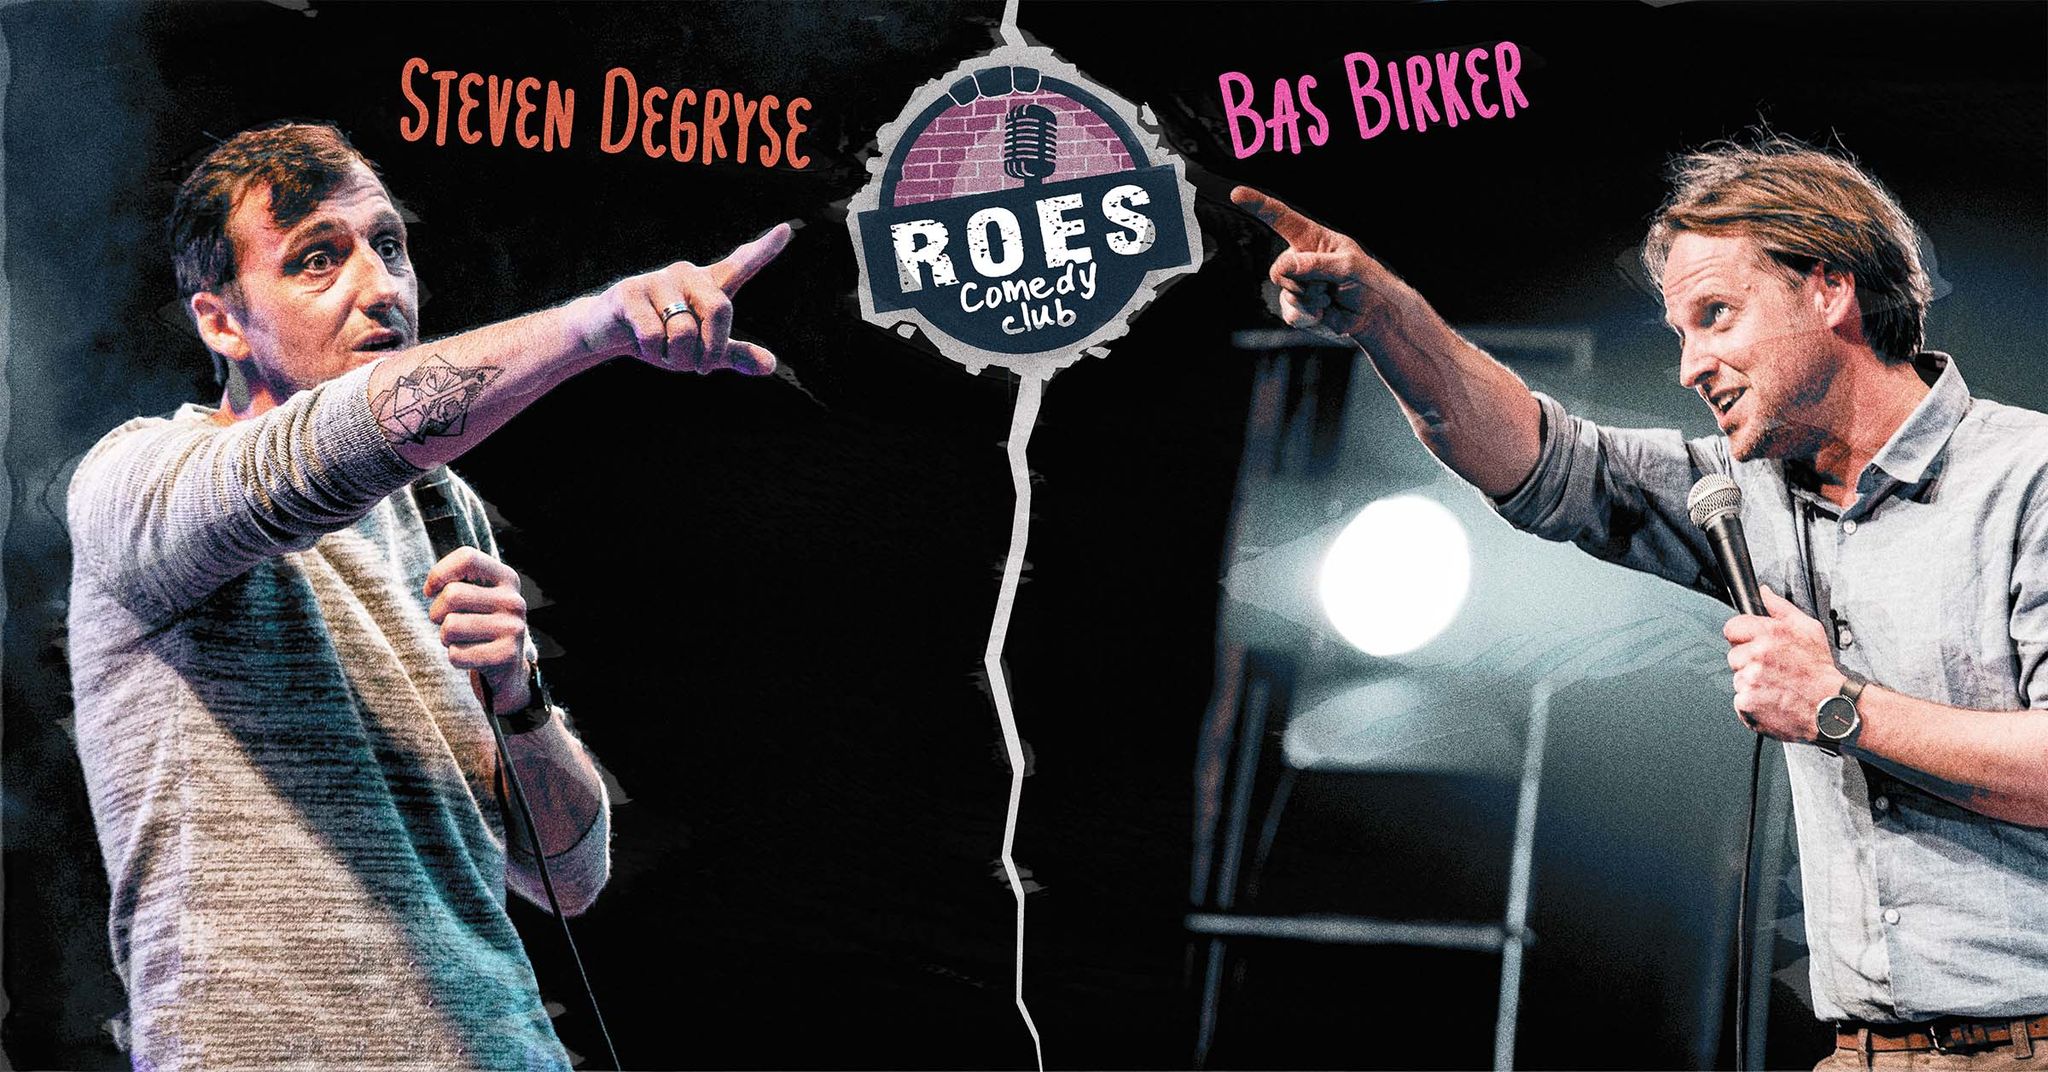 Ticket kopen voor evenement Roes Comedy Club: Bas Birker+ support Steven Degryse